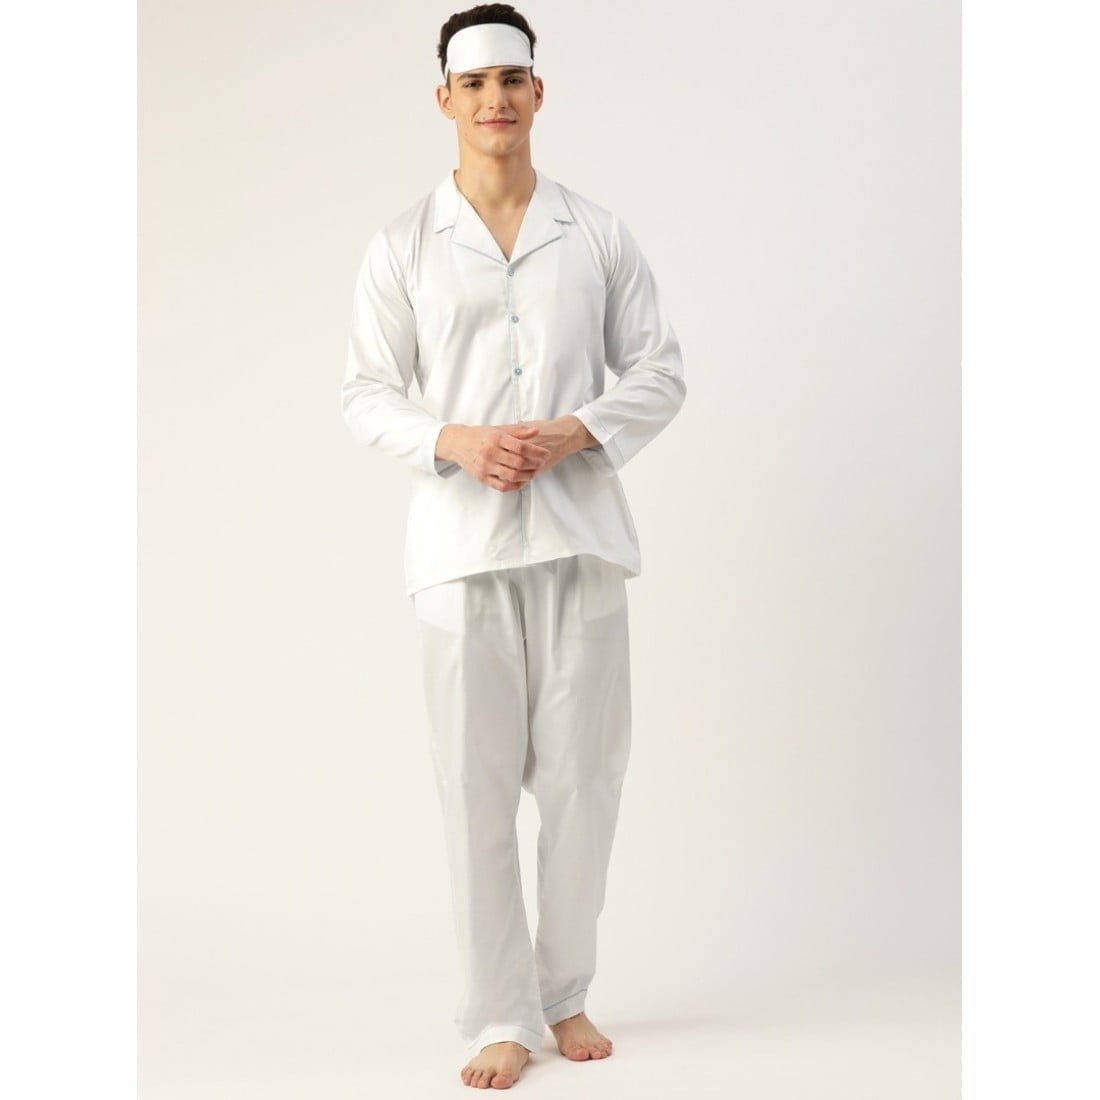 Buy Cotton Men Sleepwear with Blindfold Online in Pakistan